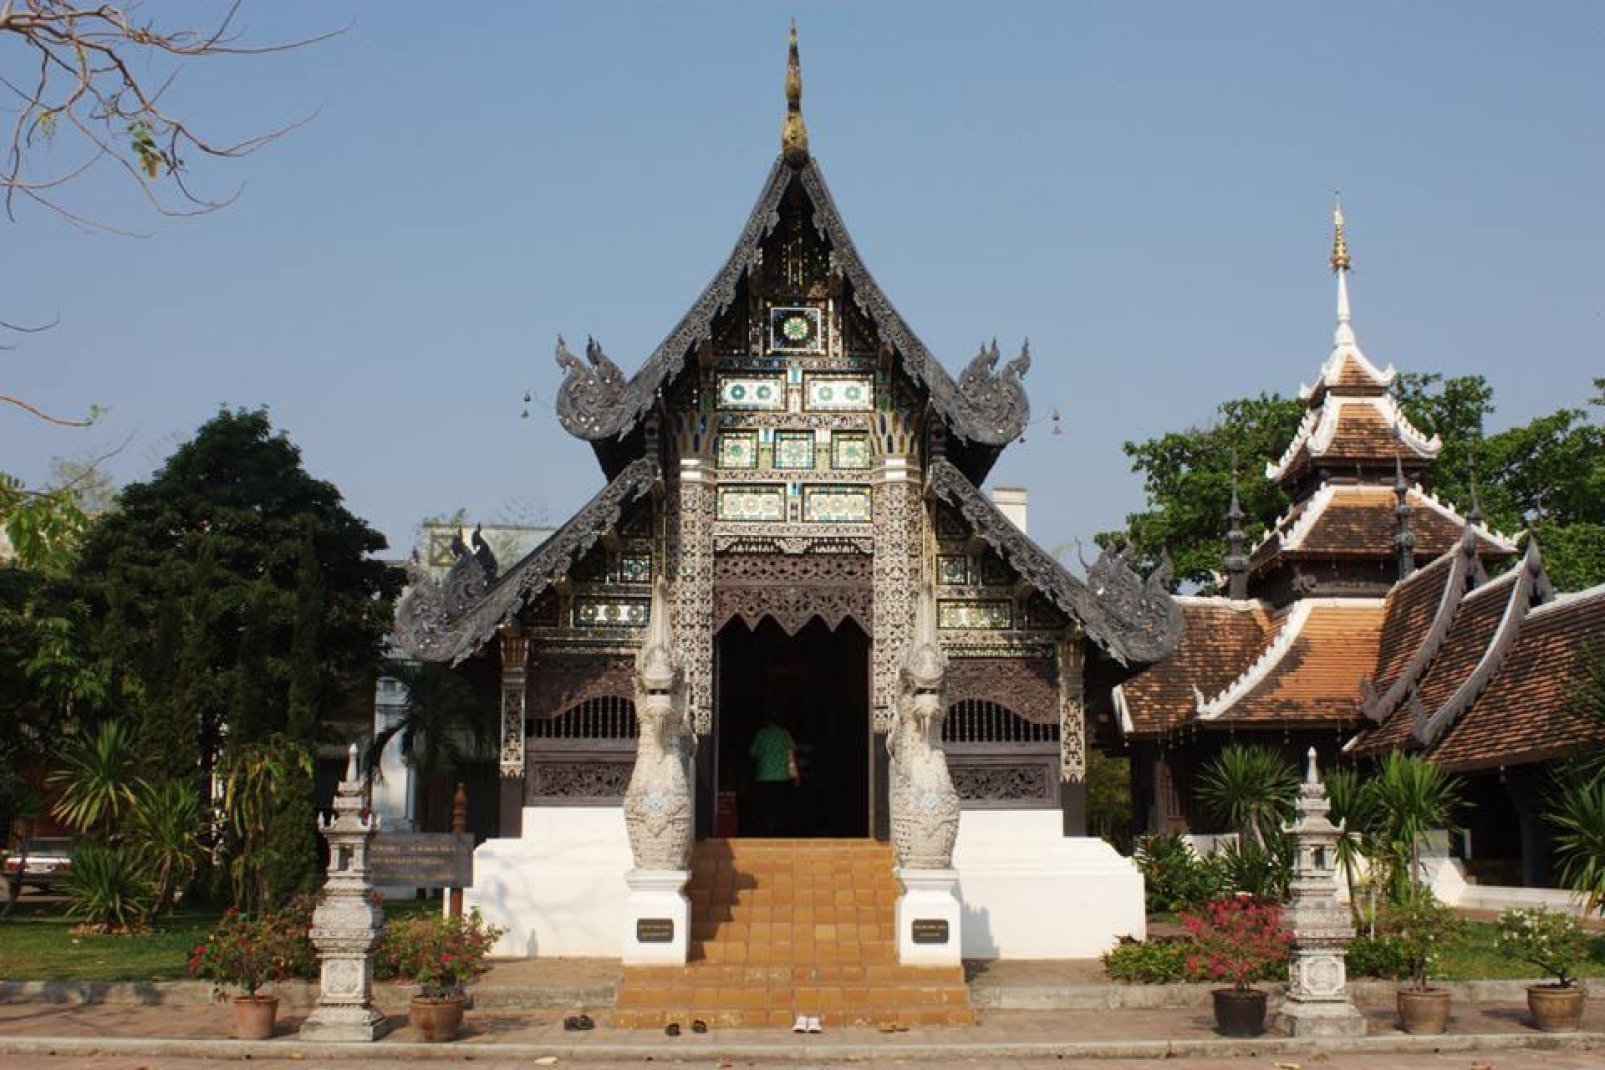 Wat Chedi Luang bestand ursprünglich aus drei Tempeln: Wat Cehdi Luang, Wat Ho Tham und Wat Sukmin.